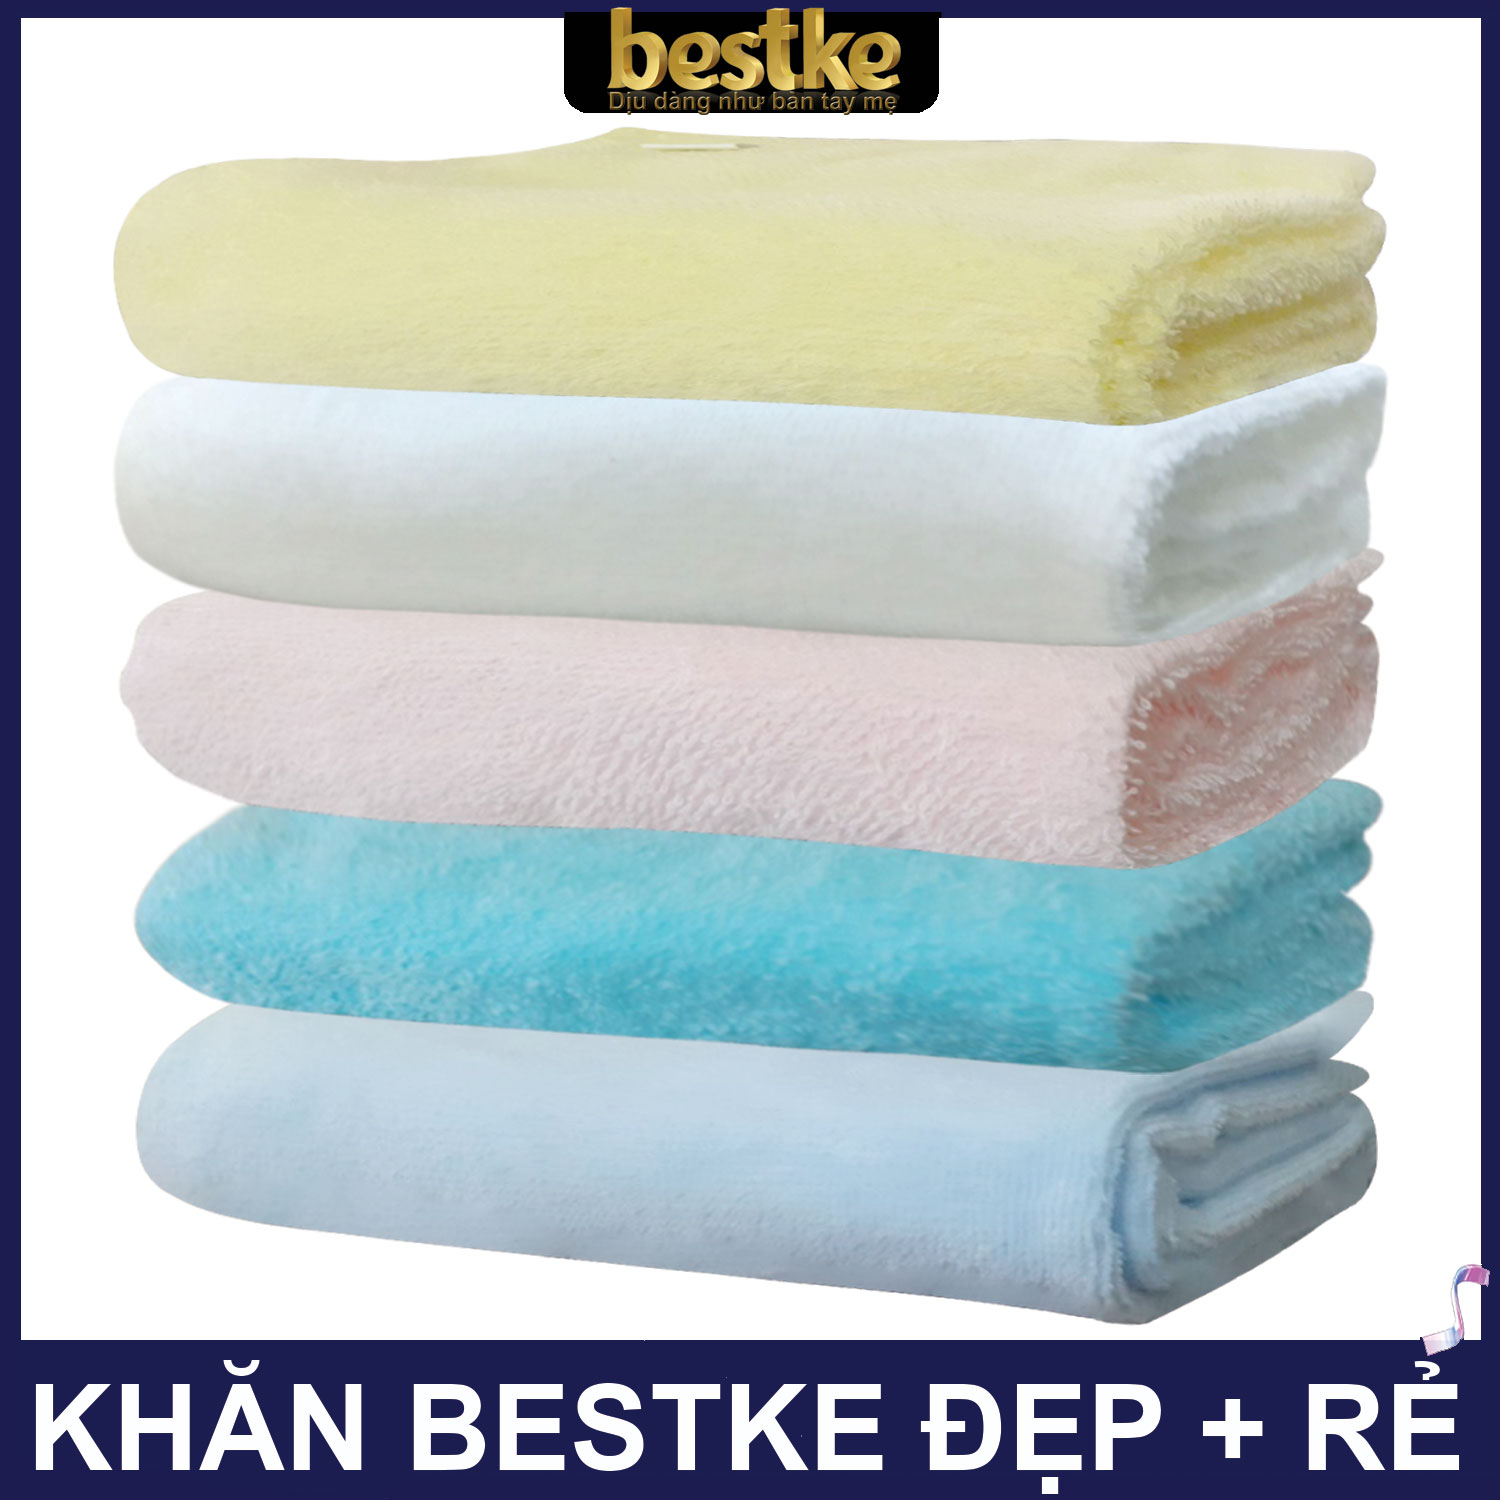 Combo 4 cái Khăn gội bestke 100% cotton, màu trắng và xanh nõn chuối, KT 83*33cm, Cotton towel, bestke towel